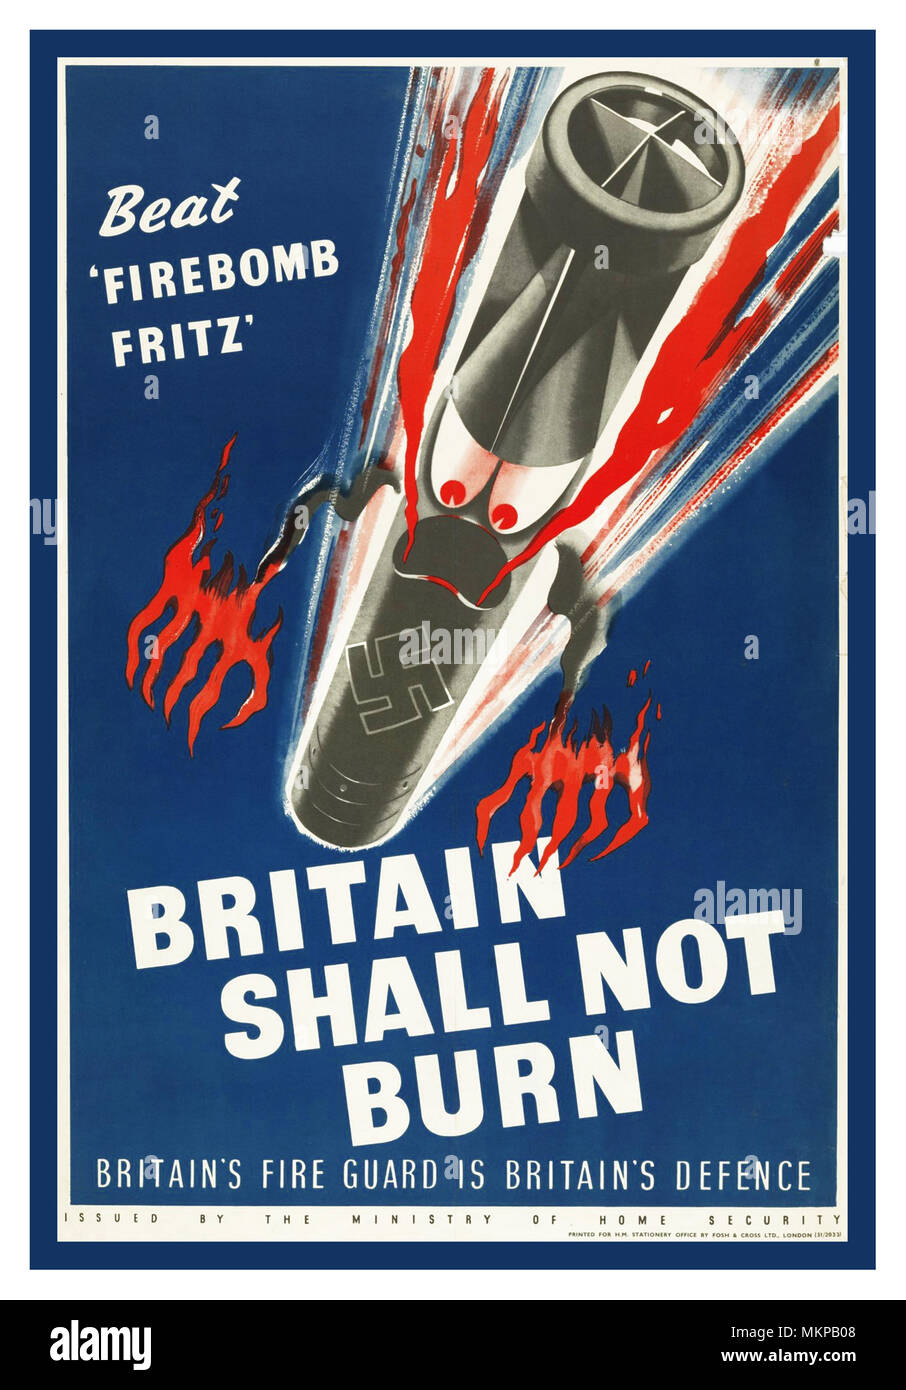 Vintage UK WW2 Propaganda Poster 1942 Beat 'bombe incendiaire Fritz' La Grande-Bretagne ne doit pas brûler. Britain's Fire Guard est la défense de Britains WW2 British poster. Le 'beat' campagne Bombe incendiaire Fritz était "destiné à faire comprendre à 'l-homme-dans-la-rue' sa la responsabilité de la lutte contre les bombes incendiaires comme un garde-feu ou lookout etc Banque D'Images